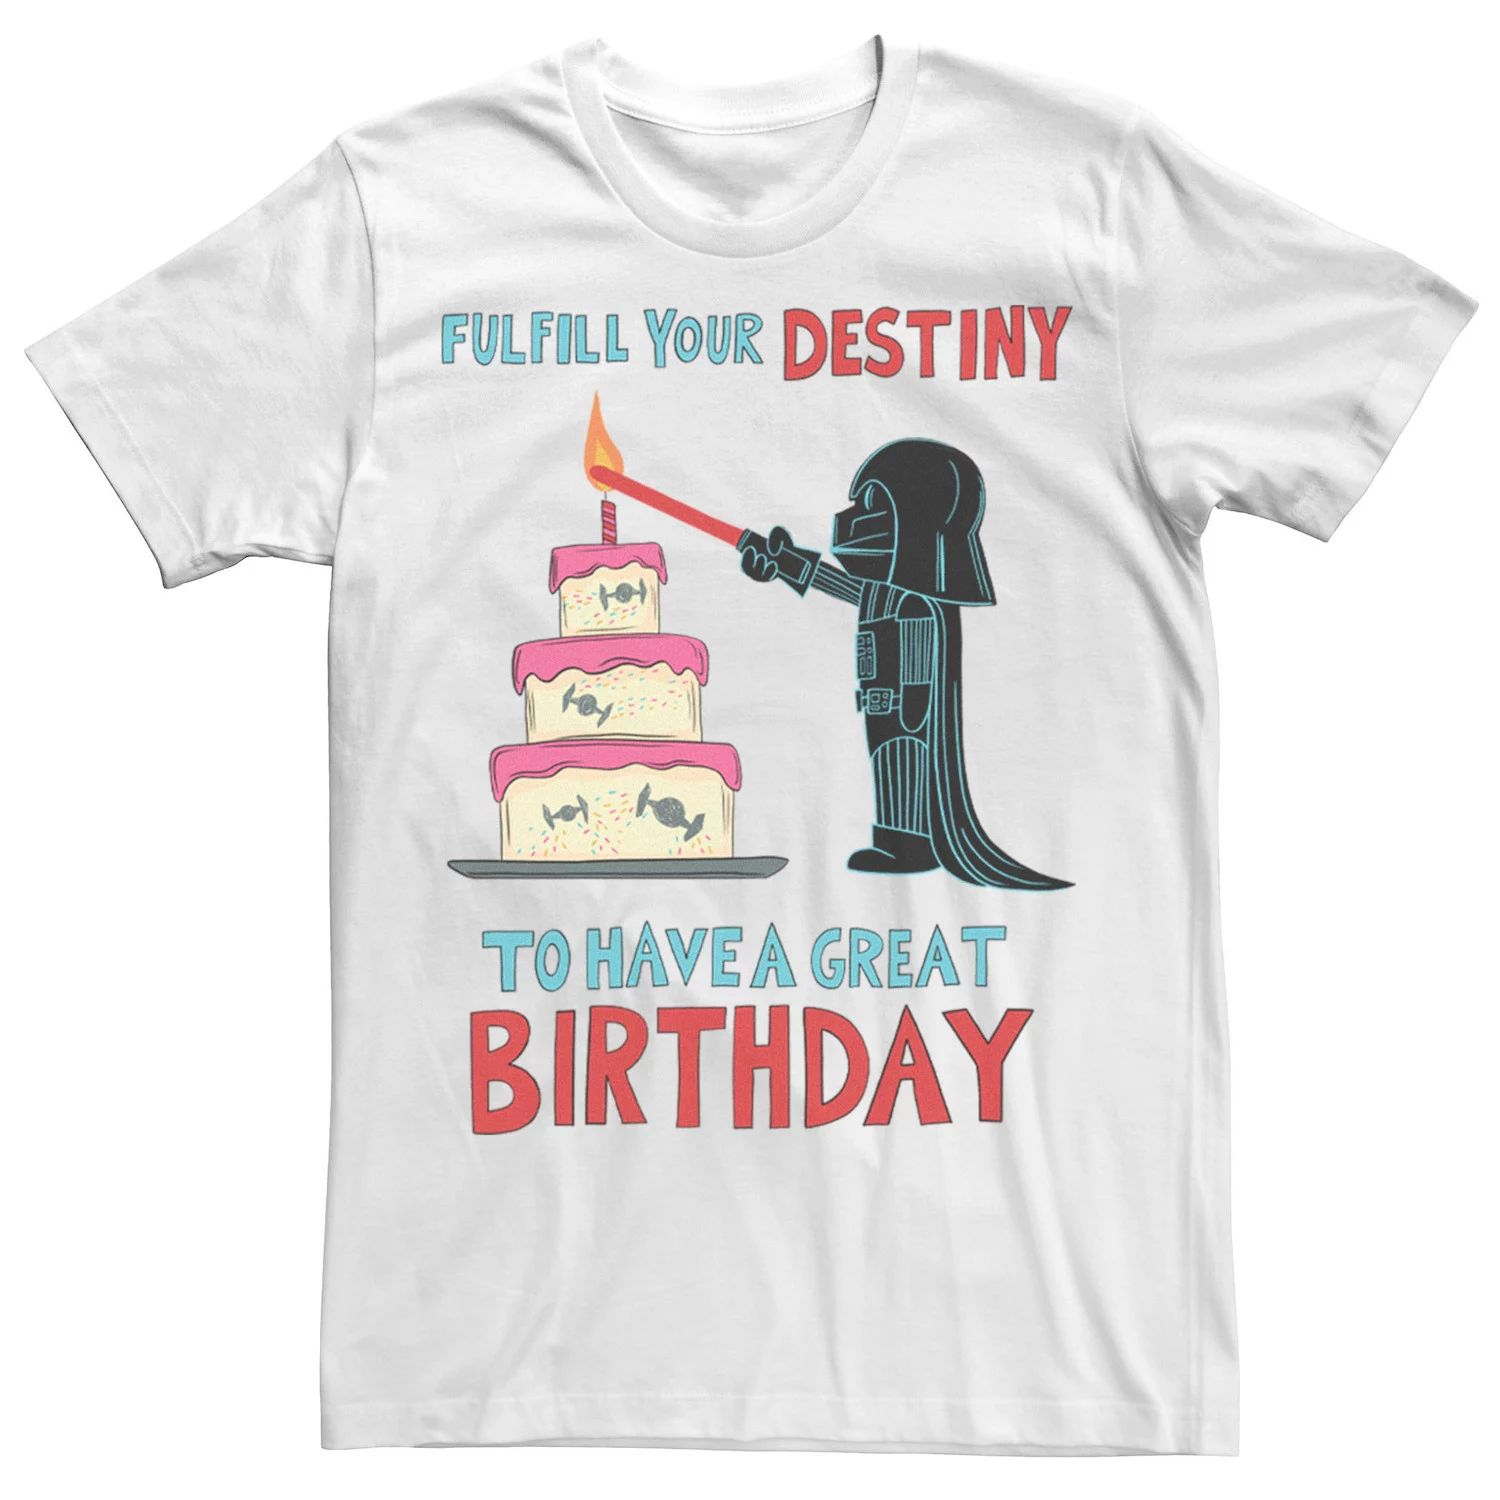 Мужская футболка в честь дня рождения Вейдера Star Wars неоновая вывессветильник в виде цифр 0 9 настенная лампа для 1 го детского дня рождения дизайн для вечеринки в честь дня рождения 18 светодио